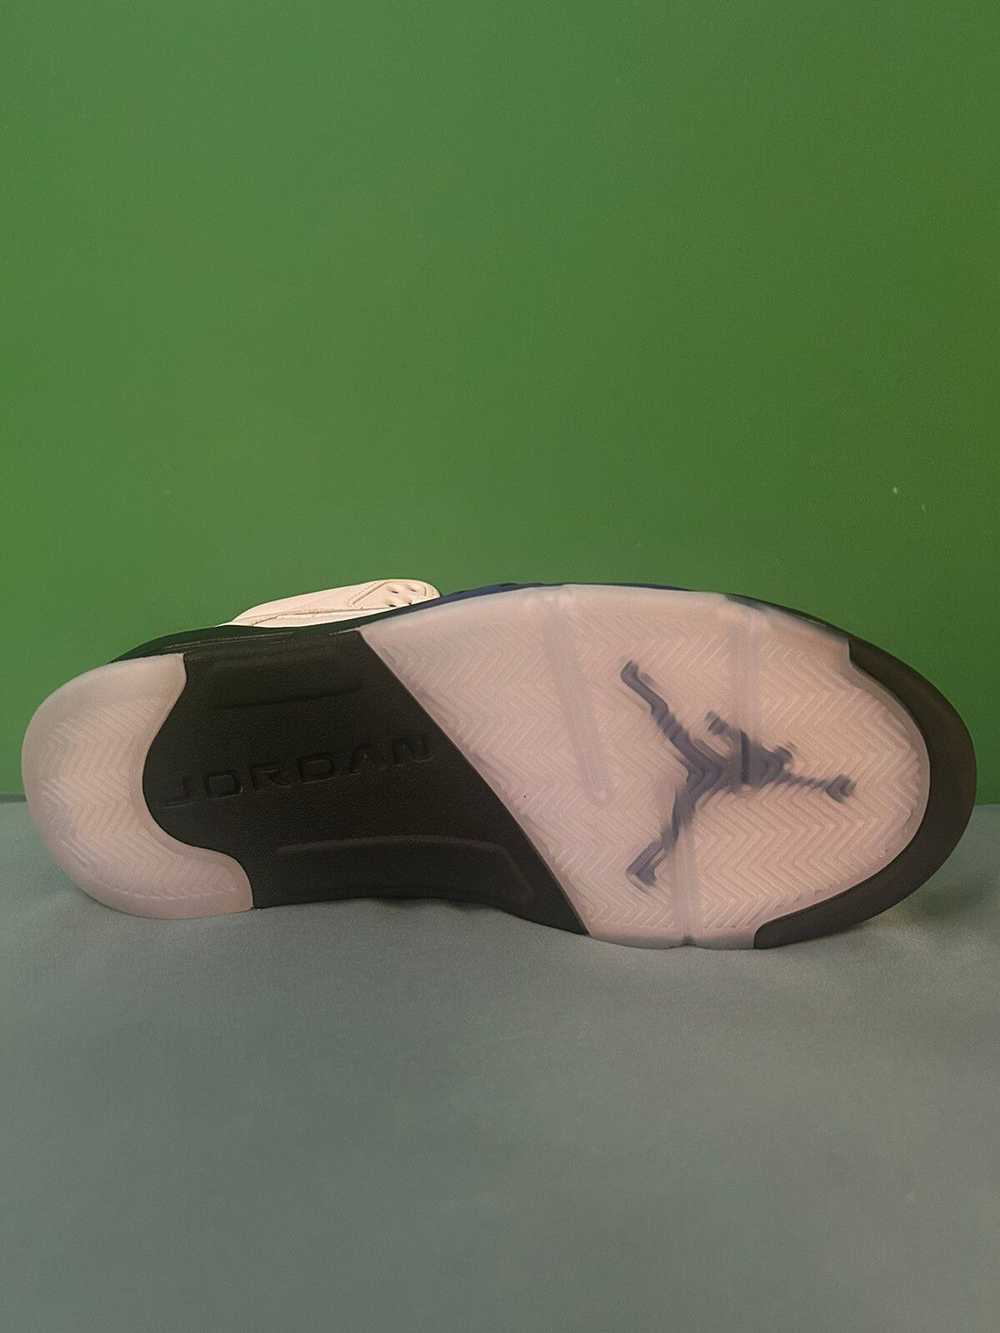 Jordan Brand Nike Air Jordan 5 Dark Concord 2022 - image 5